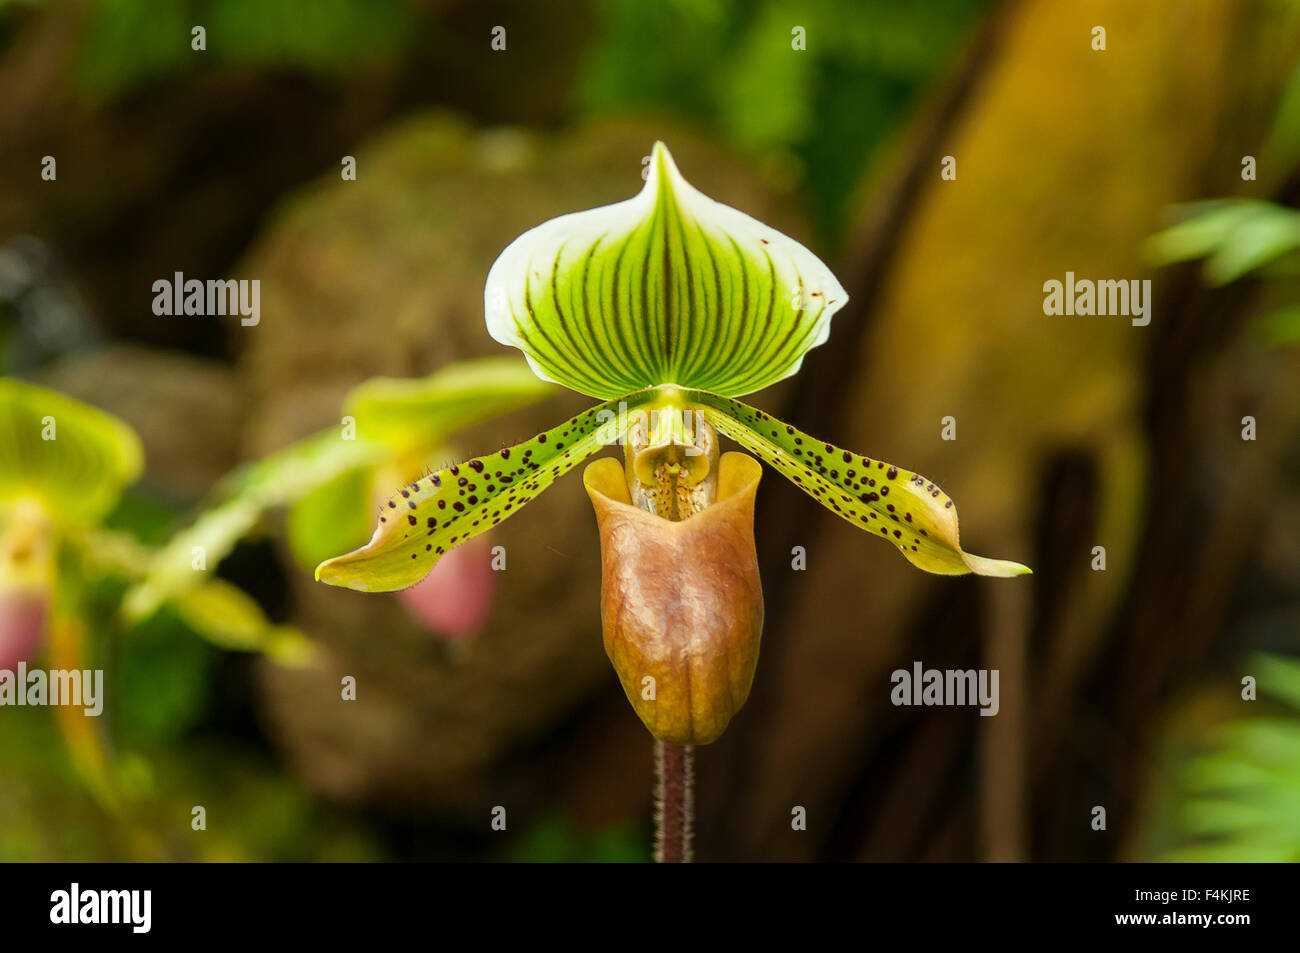 Paphiopedilum Zycleon Orchid Stock Photo